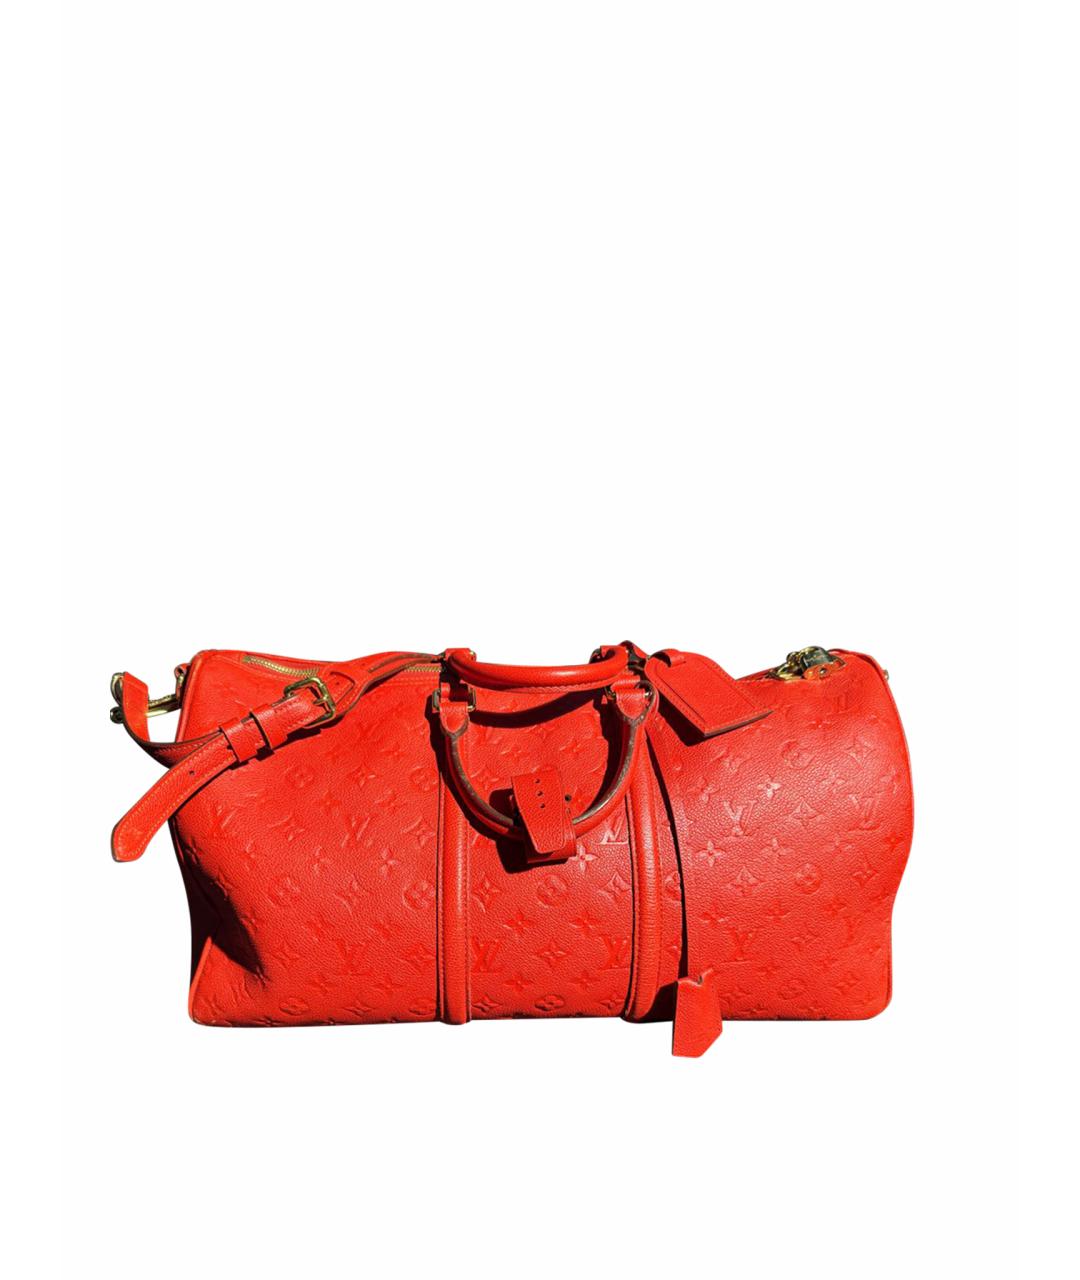 LOUIS VUITTON PRE-OWNED Красная кожаная дорожная/спортивная сумка, фото 1